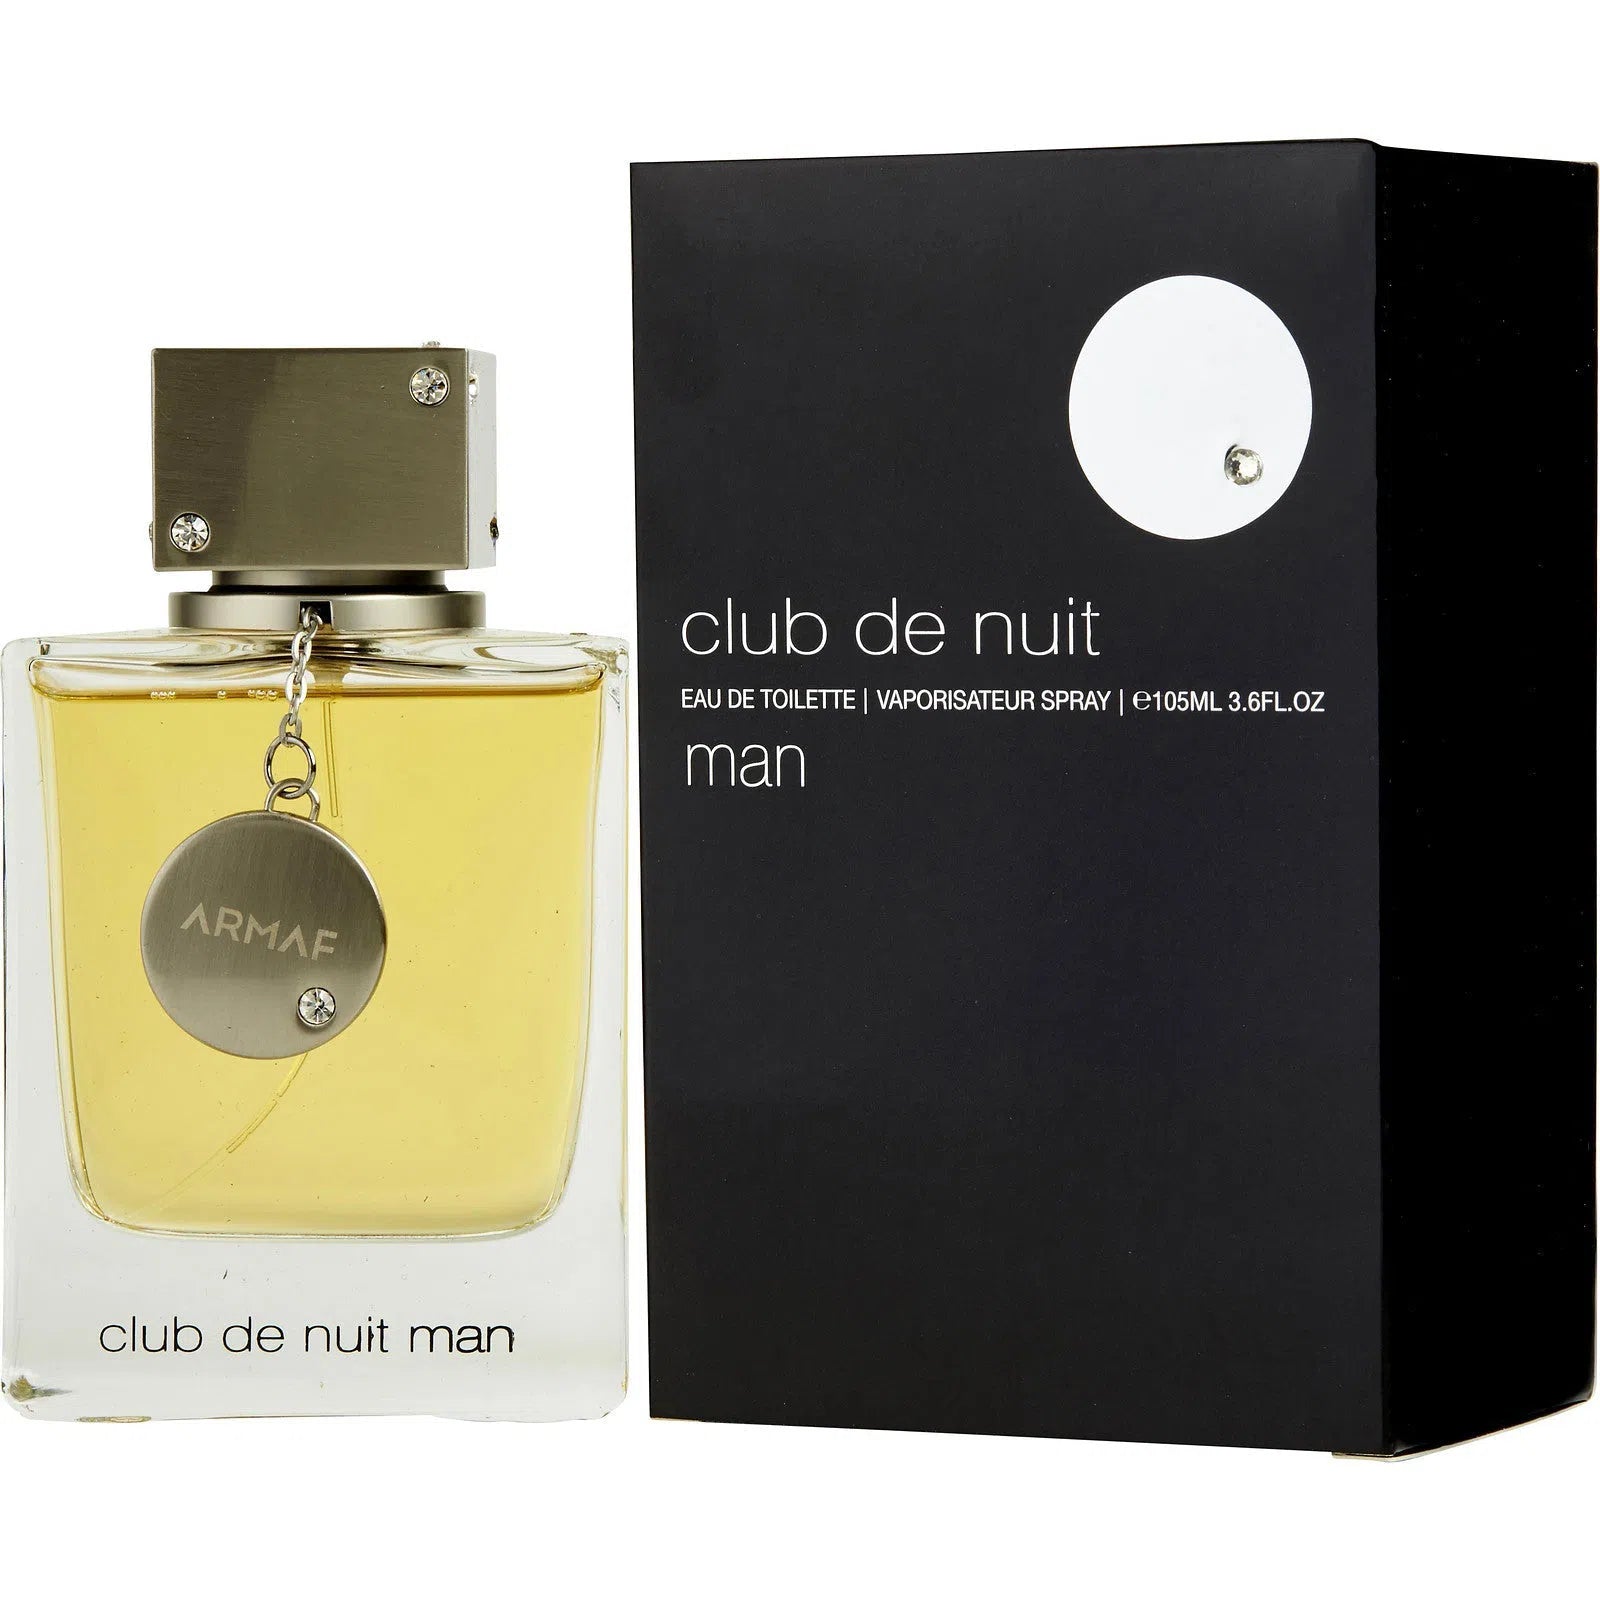 Perfume Armaf Club de Nuit Man EDT (M) / 105 ml - 6294015151596- Prive Perfumes Honduras